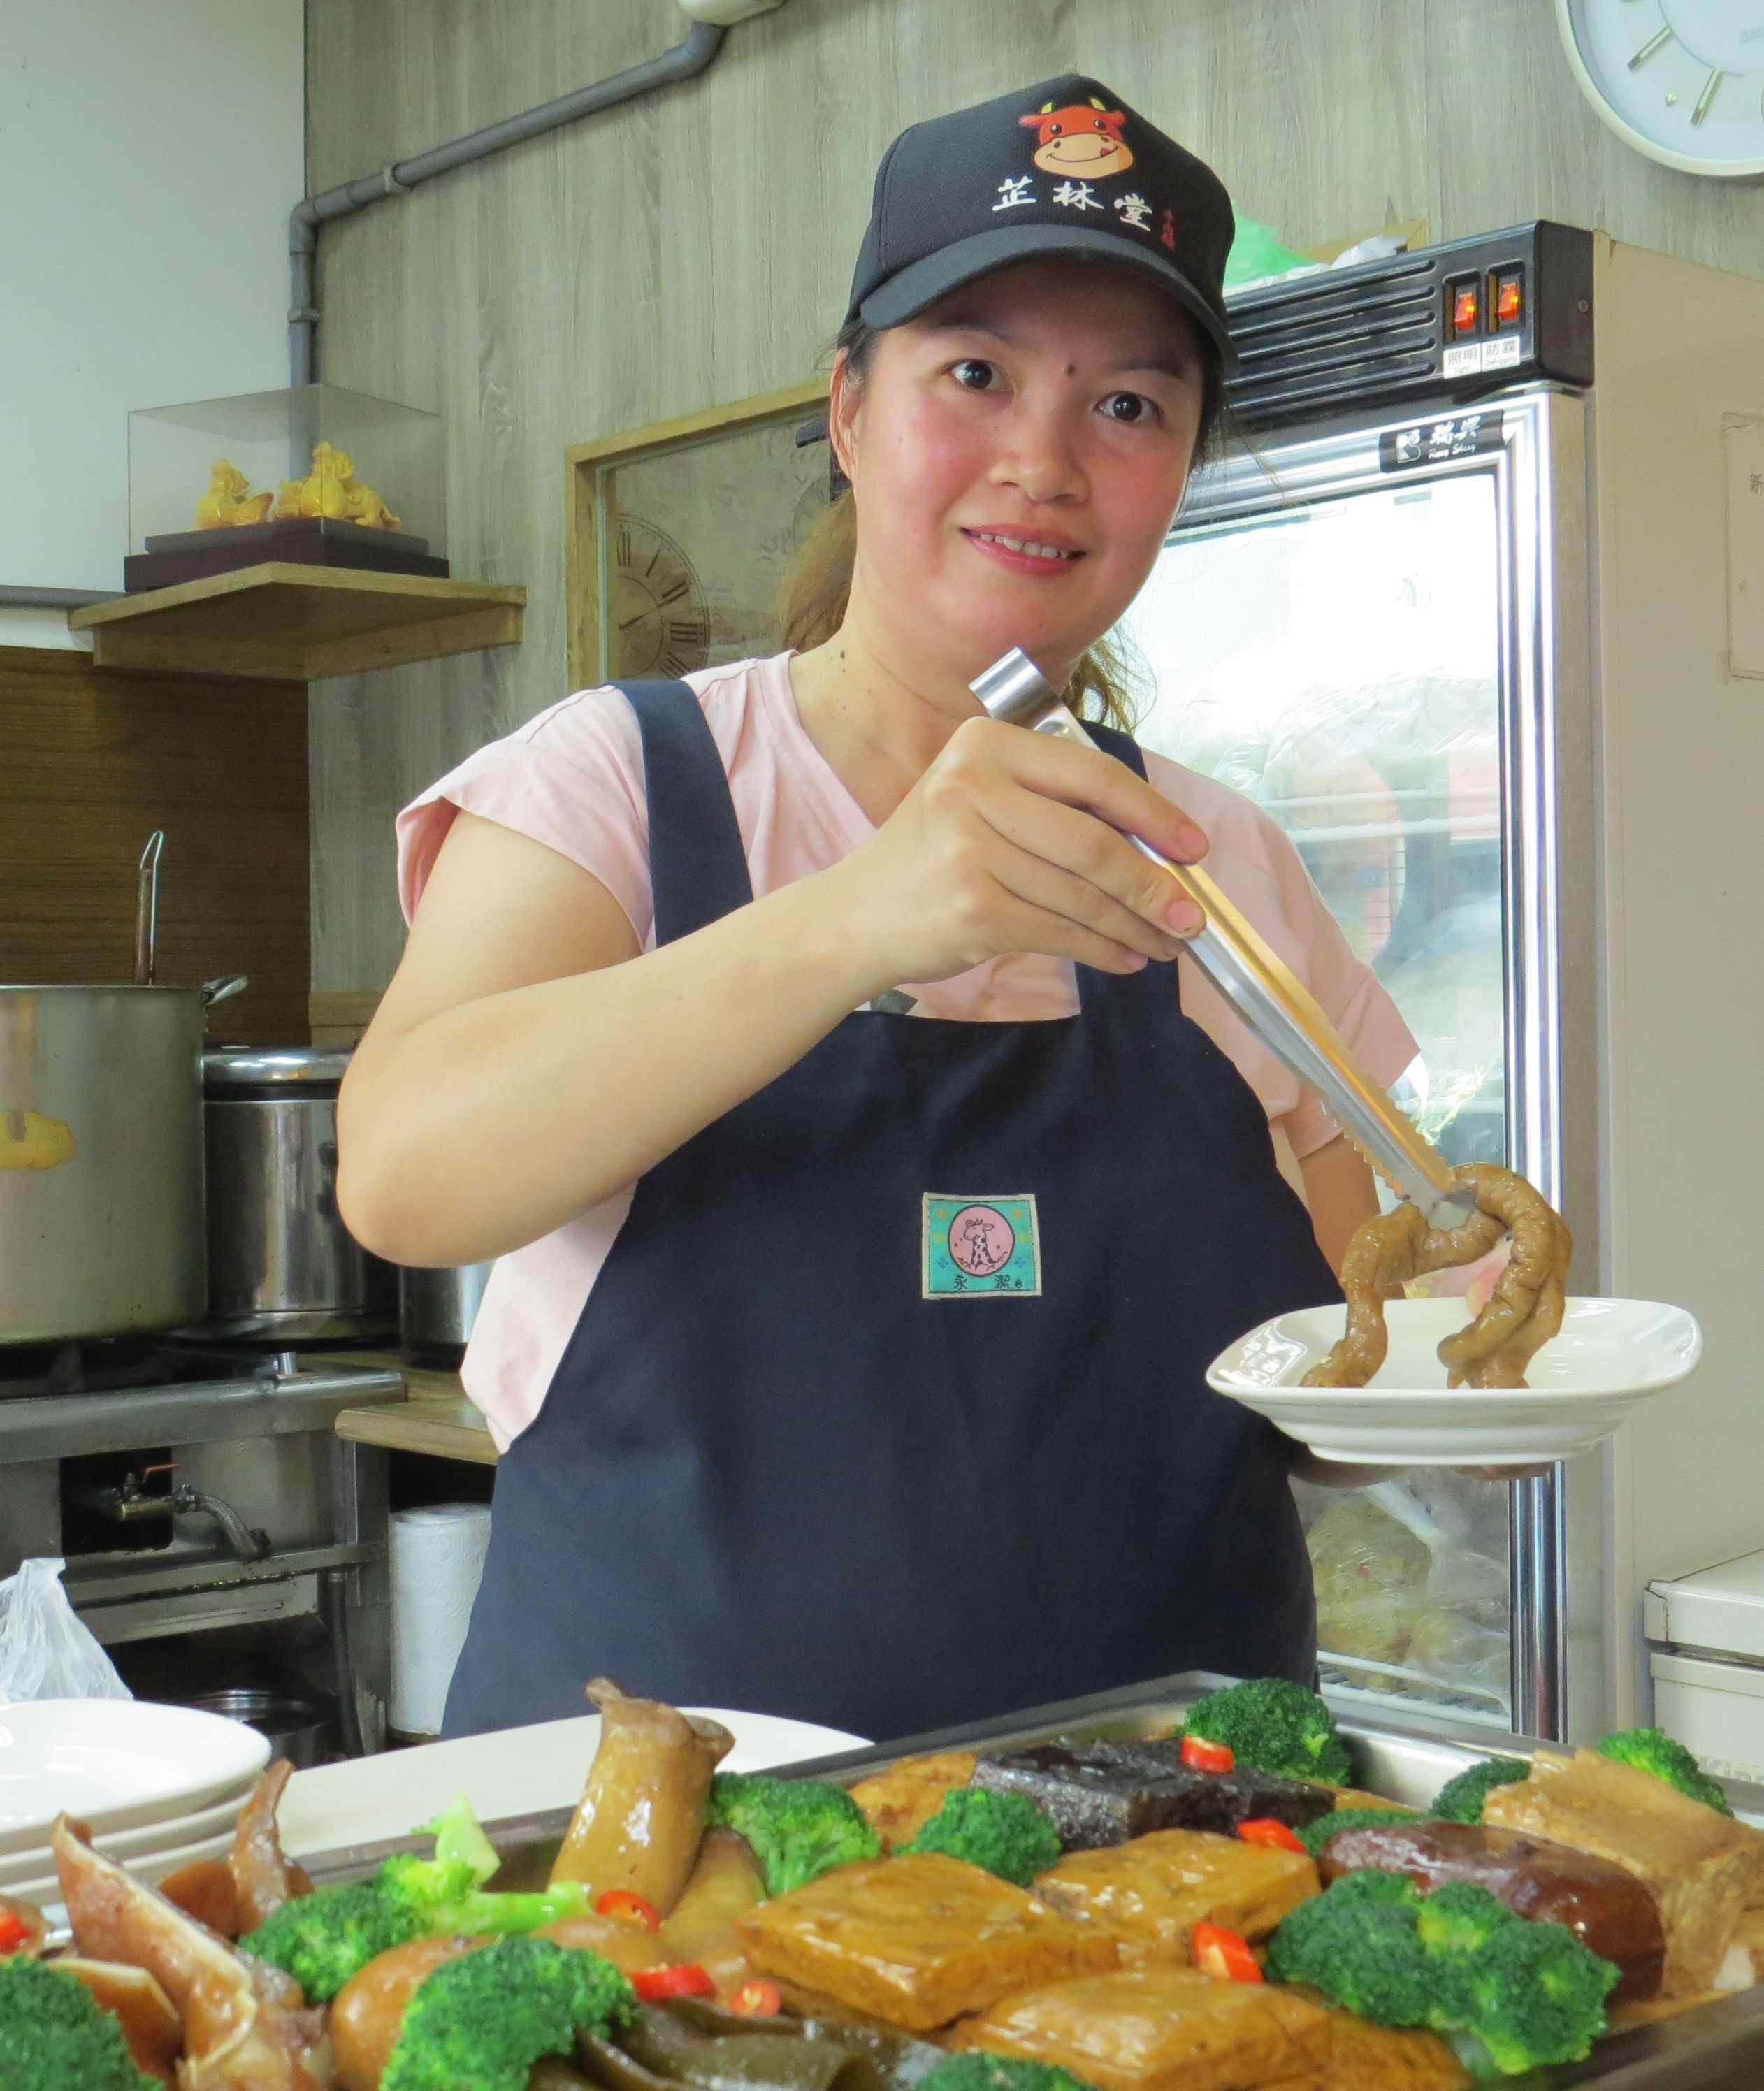 Chị Hán Thị Bình – Cư dân mới Việt Nam tham gia khóa dạy nghề của Chính phủ Tp Tân Trúc, giờ chị Bình cùng chồng đang kinh doanh một quán ăn (ảnh: Chính phủ Tp Tân Trúc